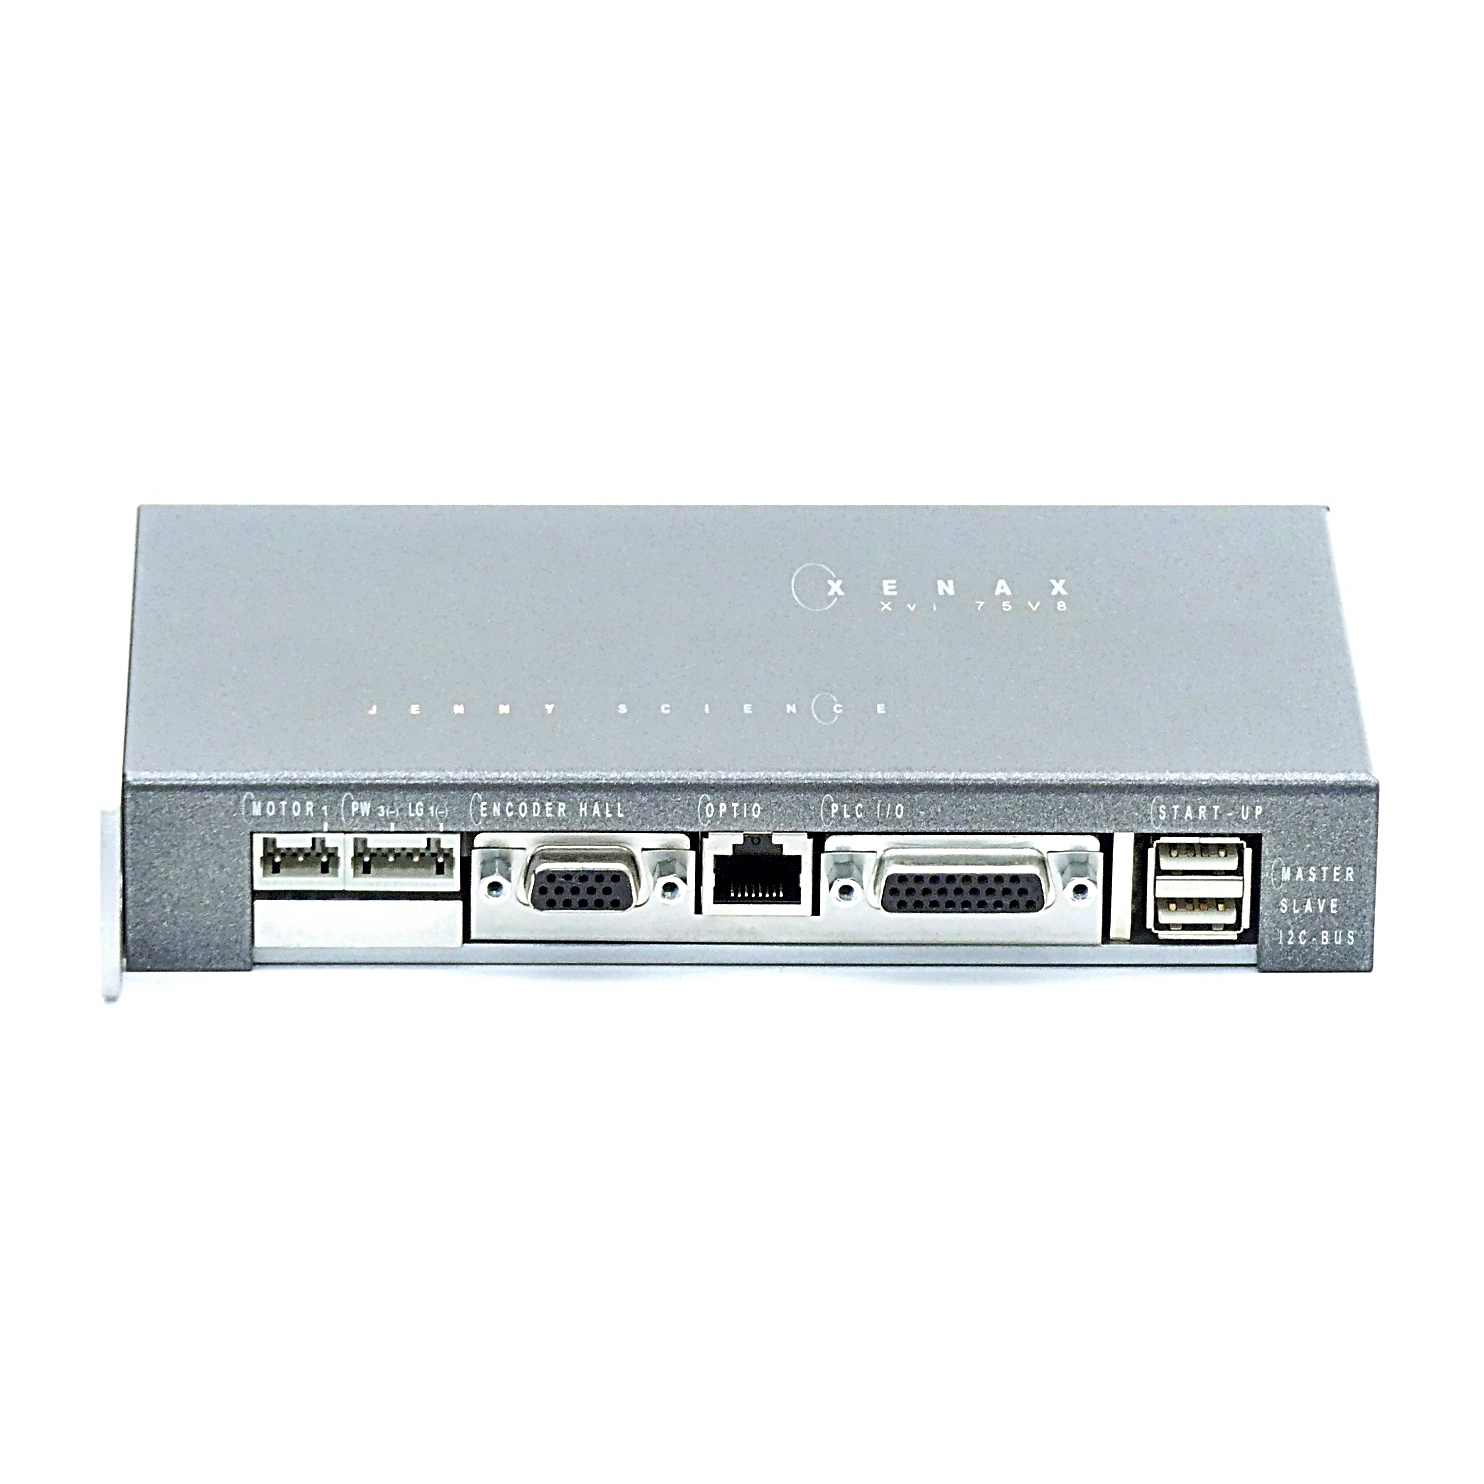 XENAX® Xvi Ethernet Servocontroller 